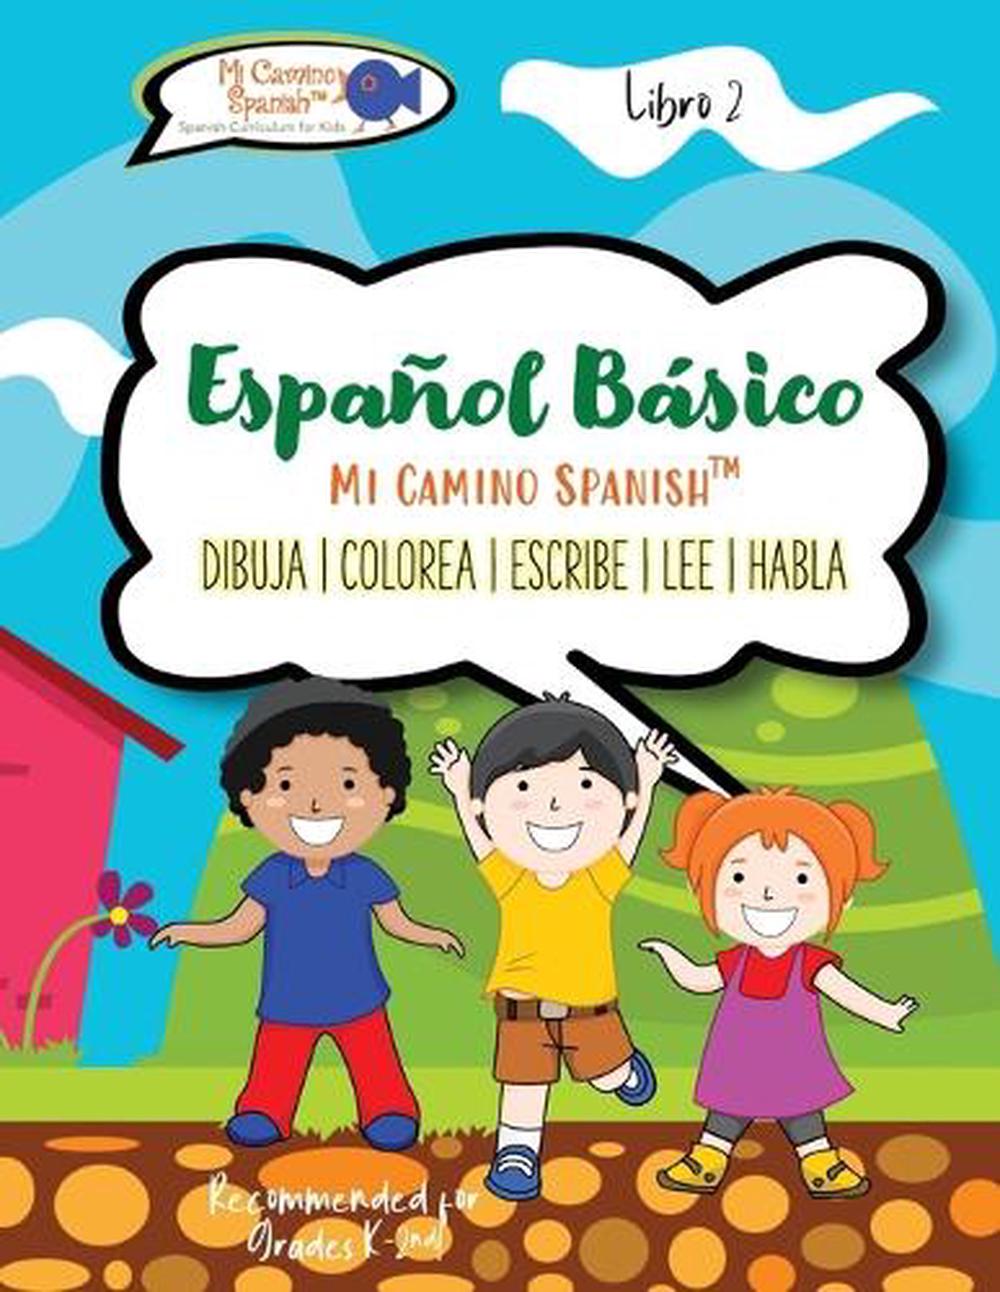 Espanol Basico Para Ninos Book 2 By Mi Camino Spanish Spanish